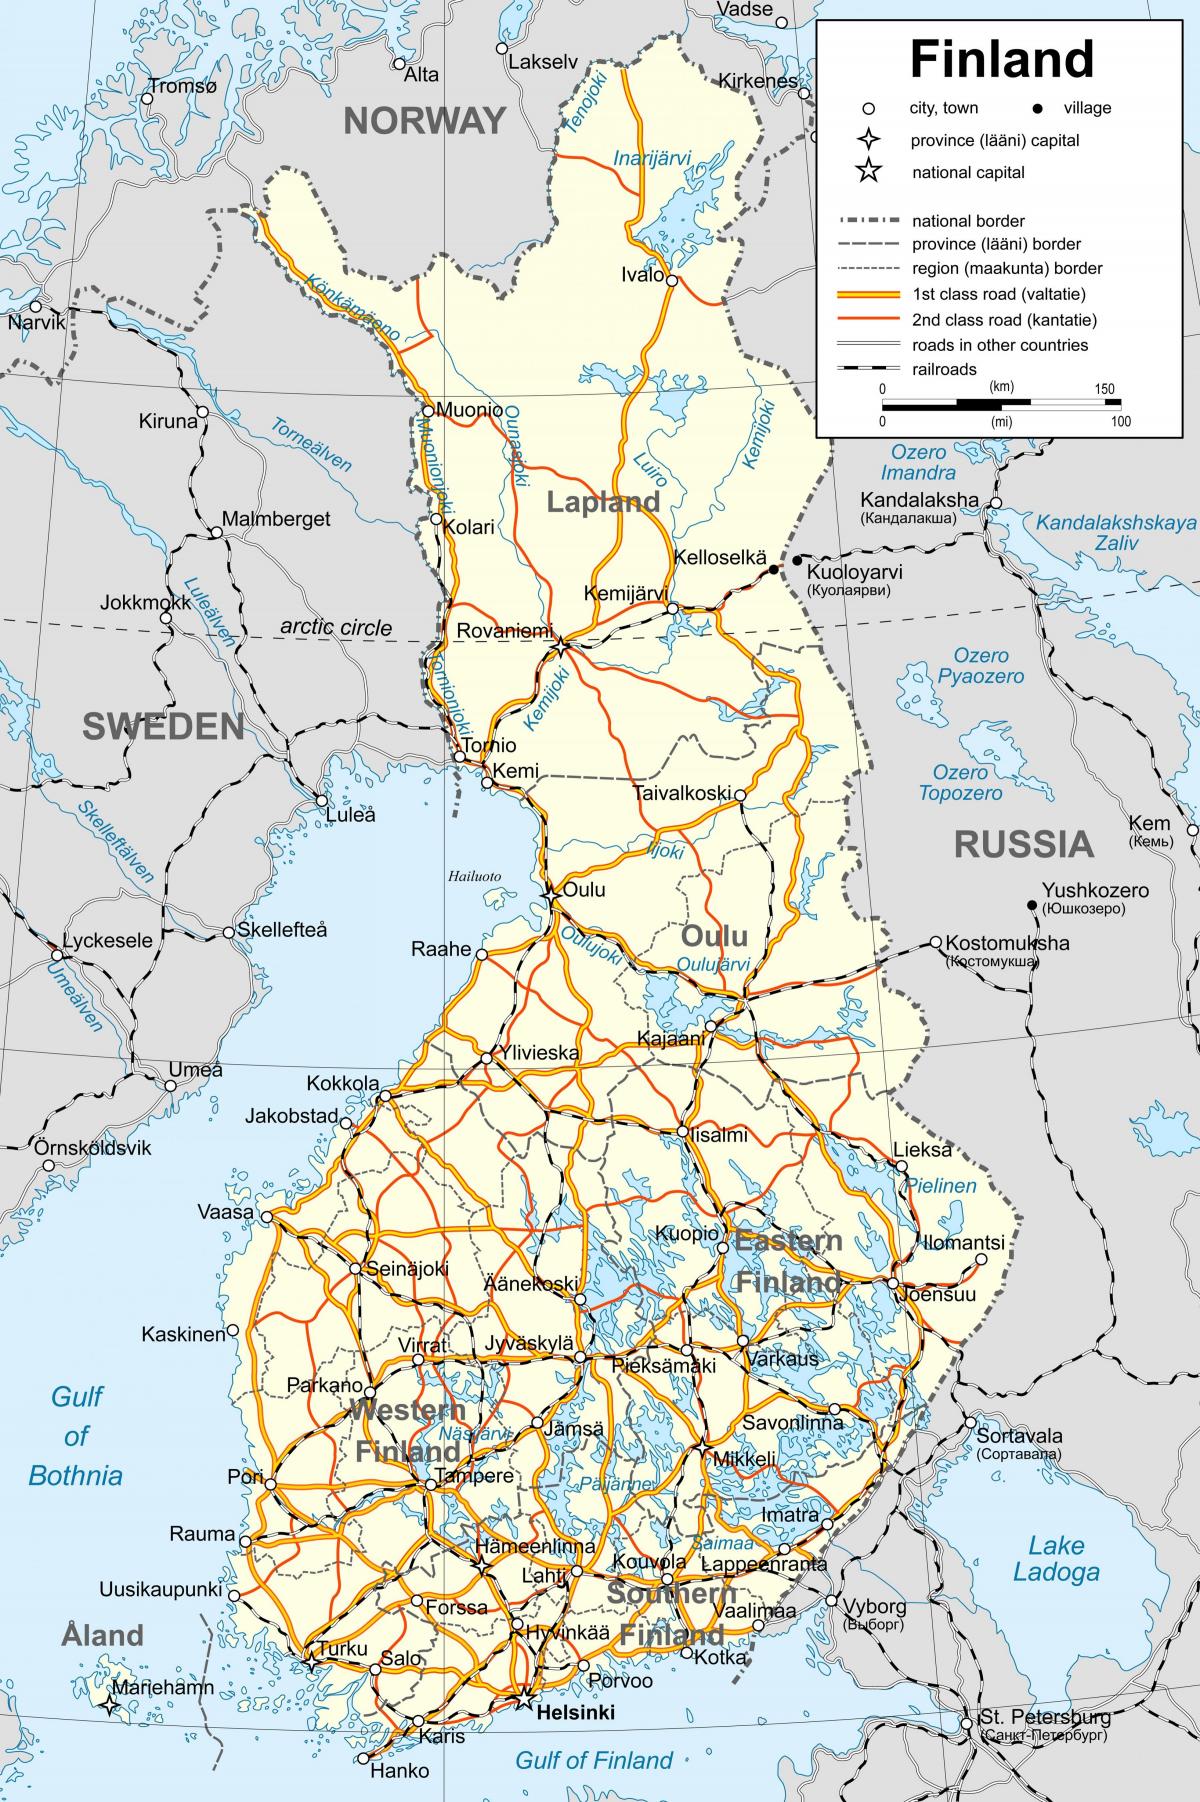 नक्शा फिनलैंड के राजनीतिक